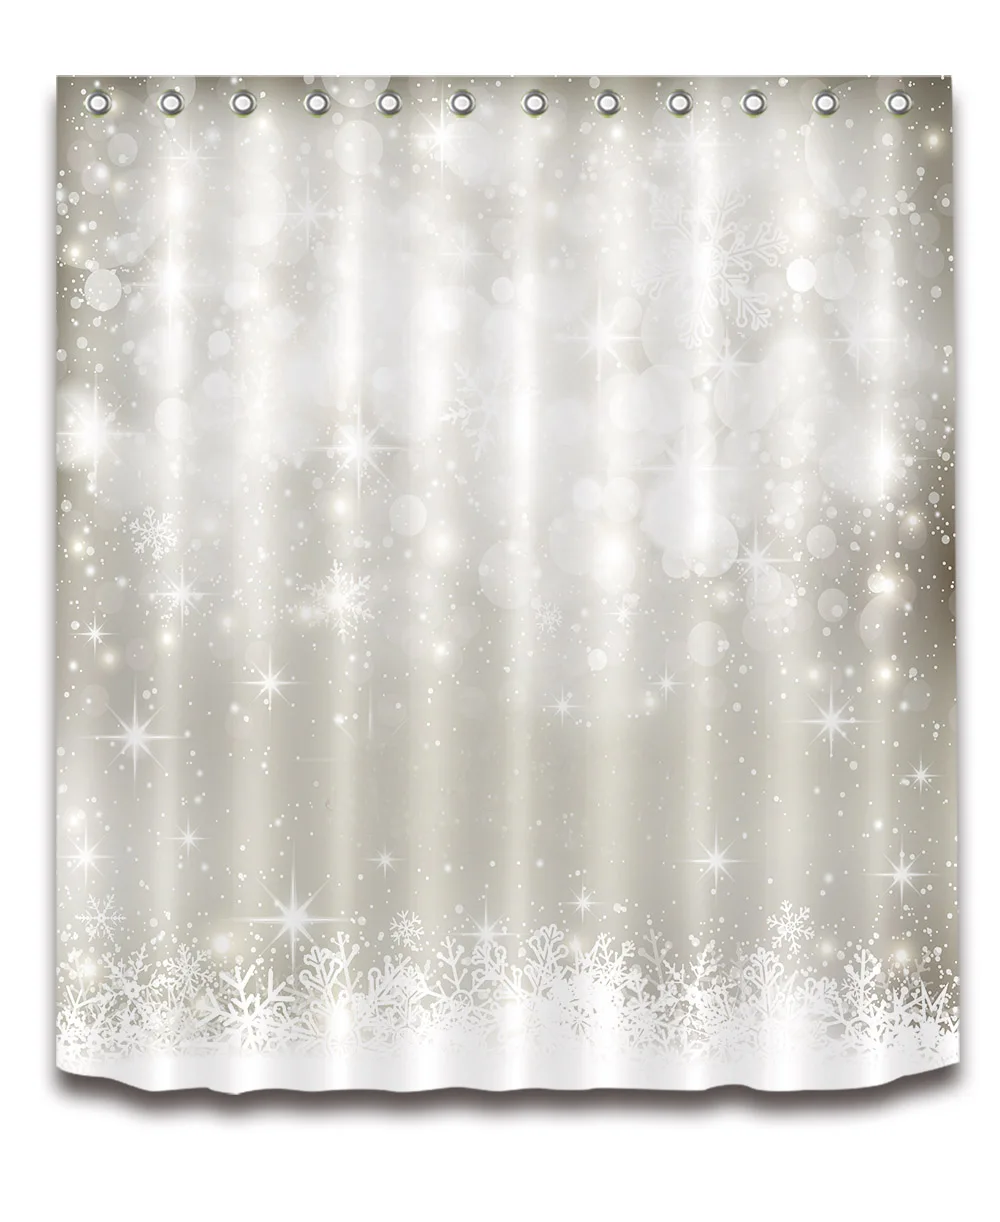 LB Белый занавеска для душа s мерцание Рождество Серебряные звезды роскошный Снежинка ванная комната занавеска ткань полиэстер для ванной Декор